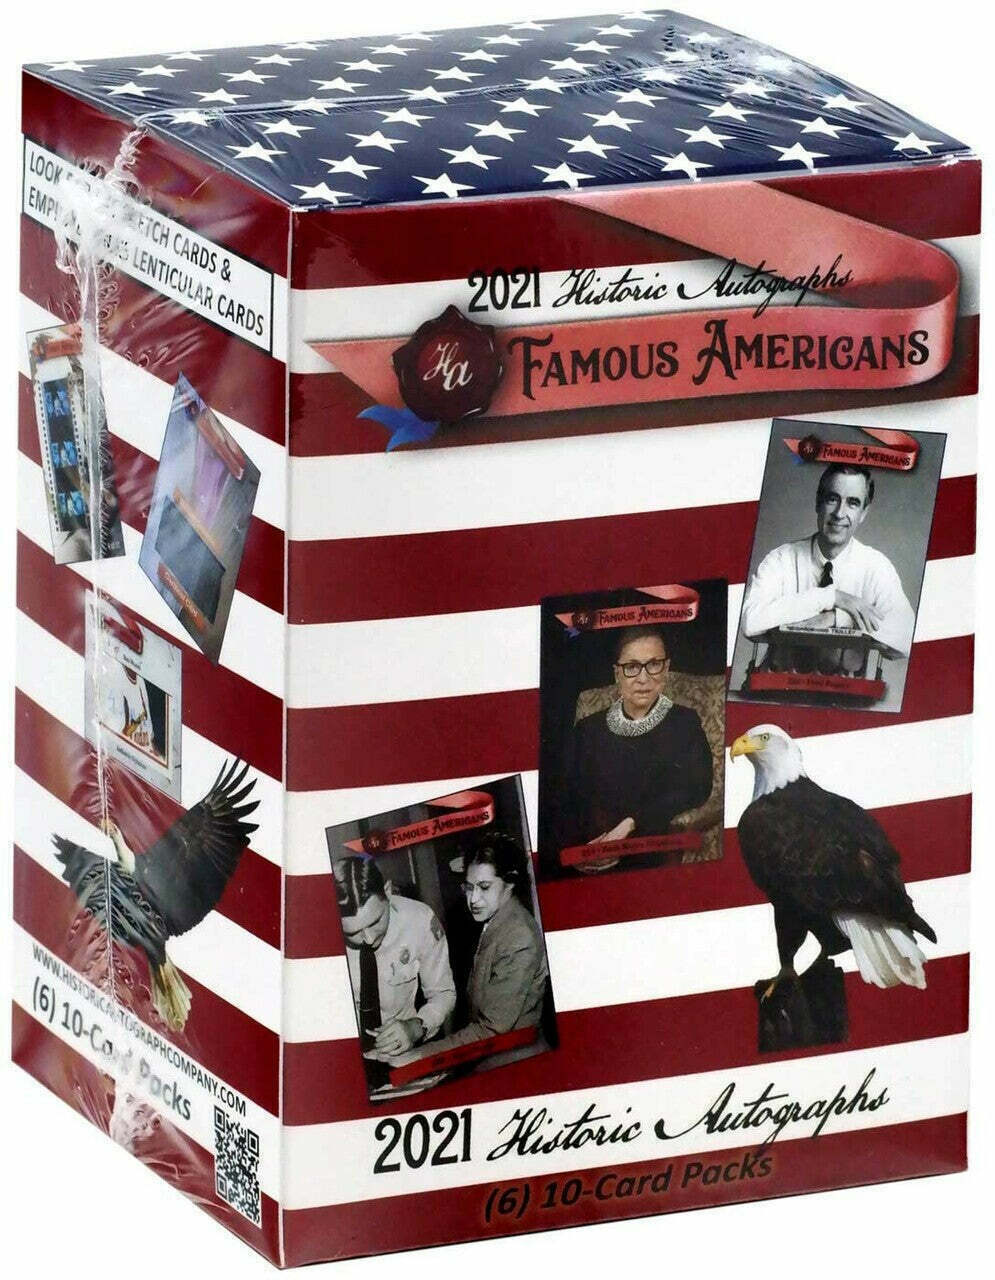 2021 Historic Autographs: Famous Americans  Blaster Box